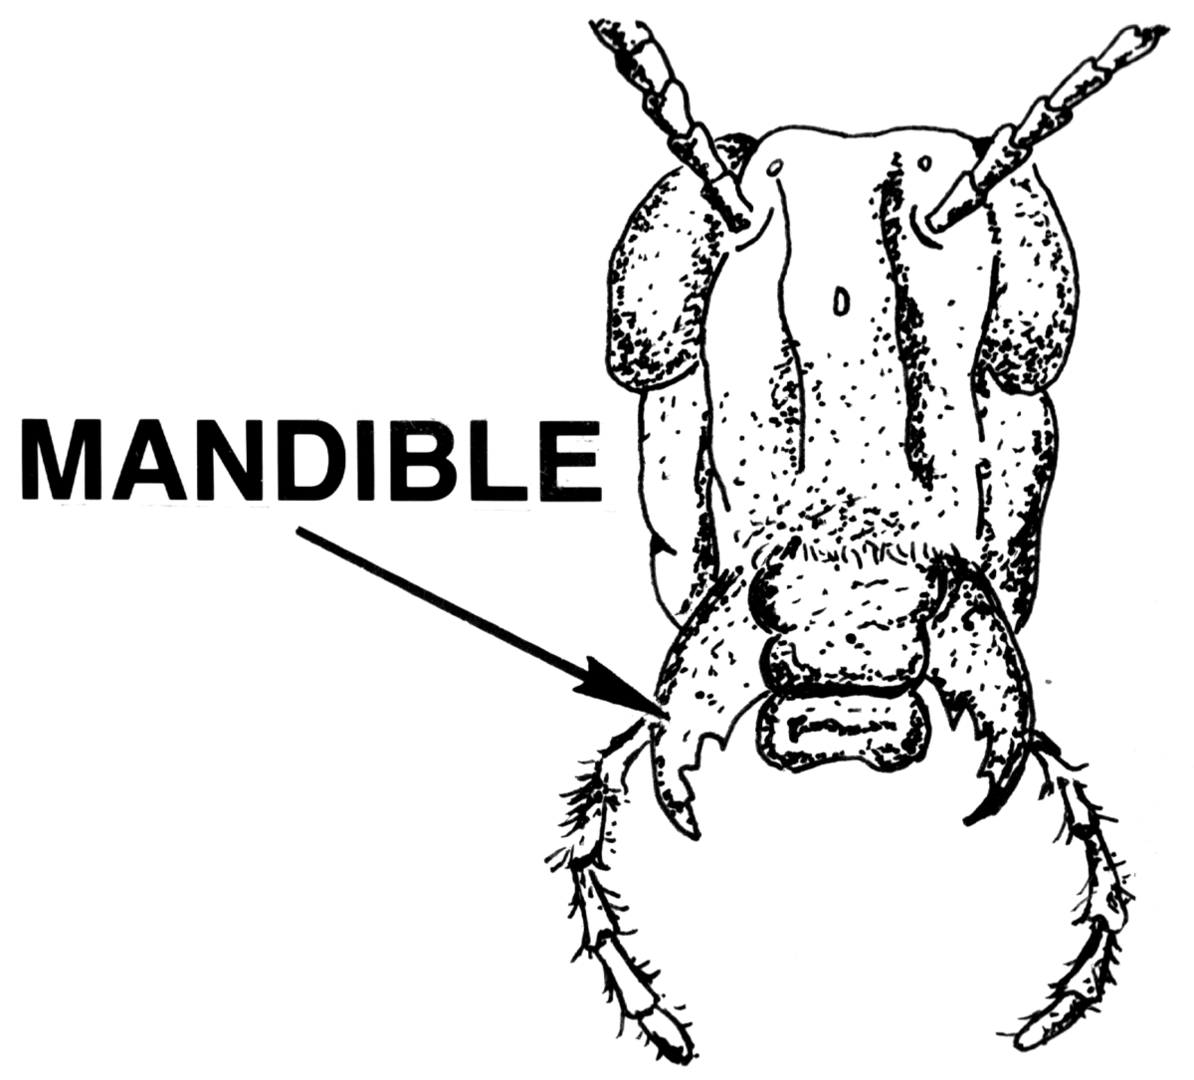 اكتشاف قدرة فطرية لدى النمل في التعرف على الجروح ومعالجتها